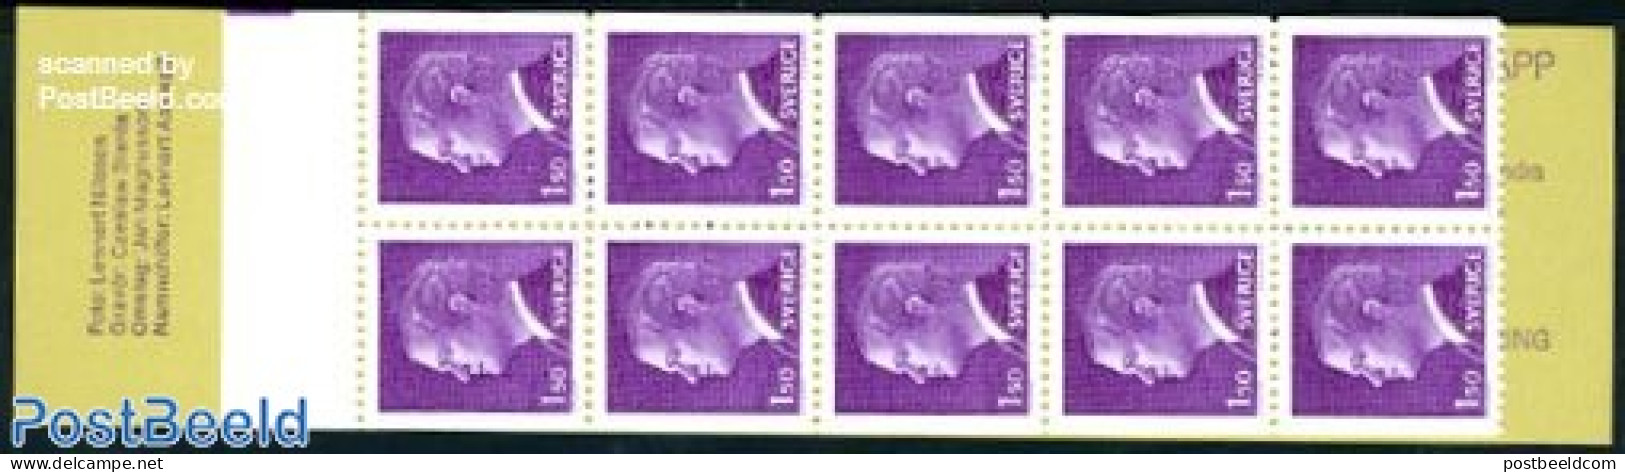 Sweden 1980 Definitives Booklet, Mint NH, Stamp Booklets - Neufs